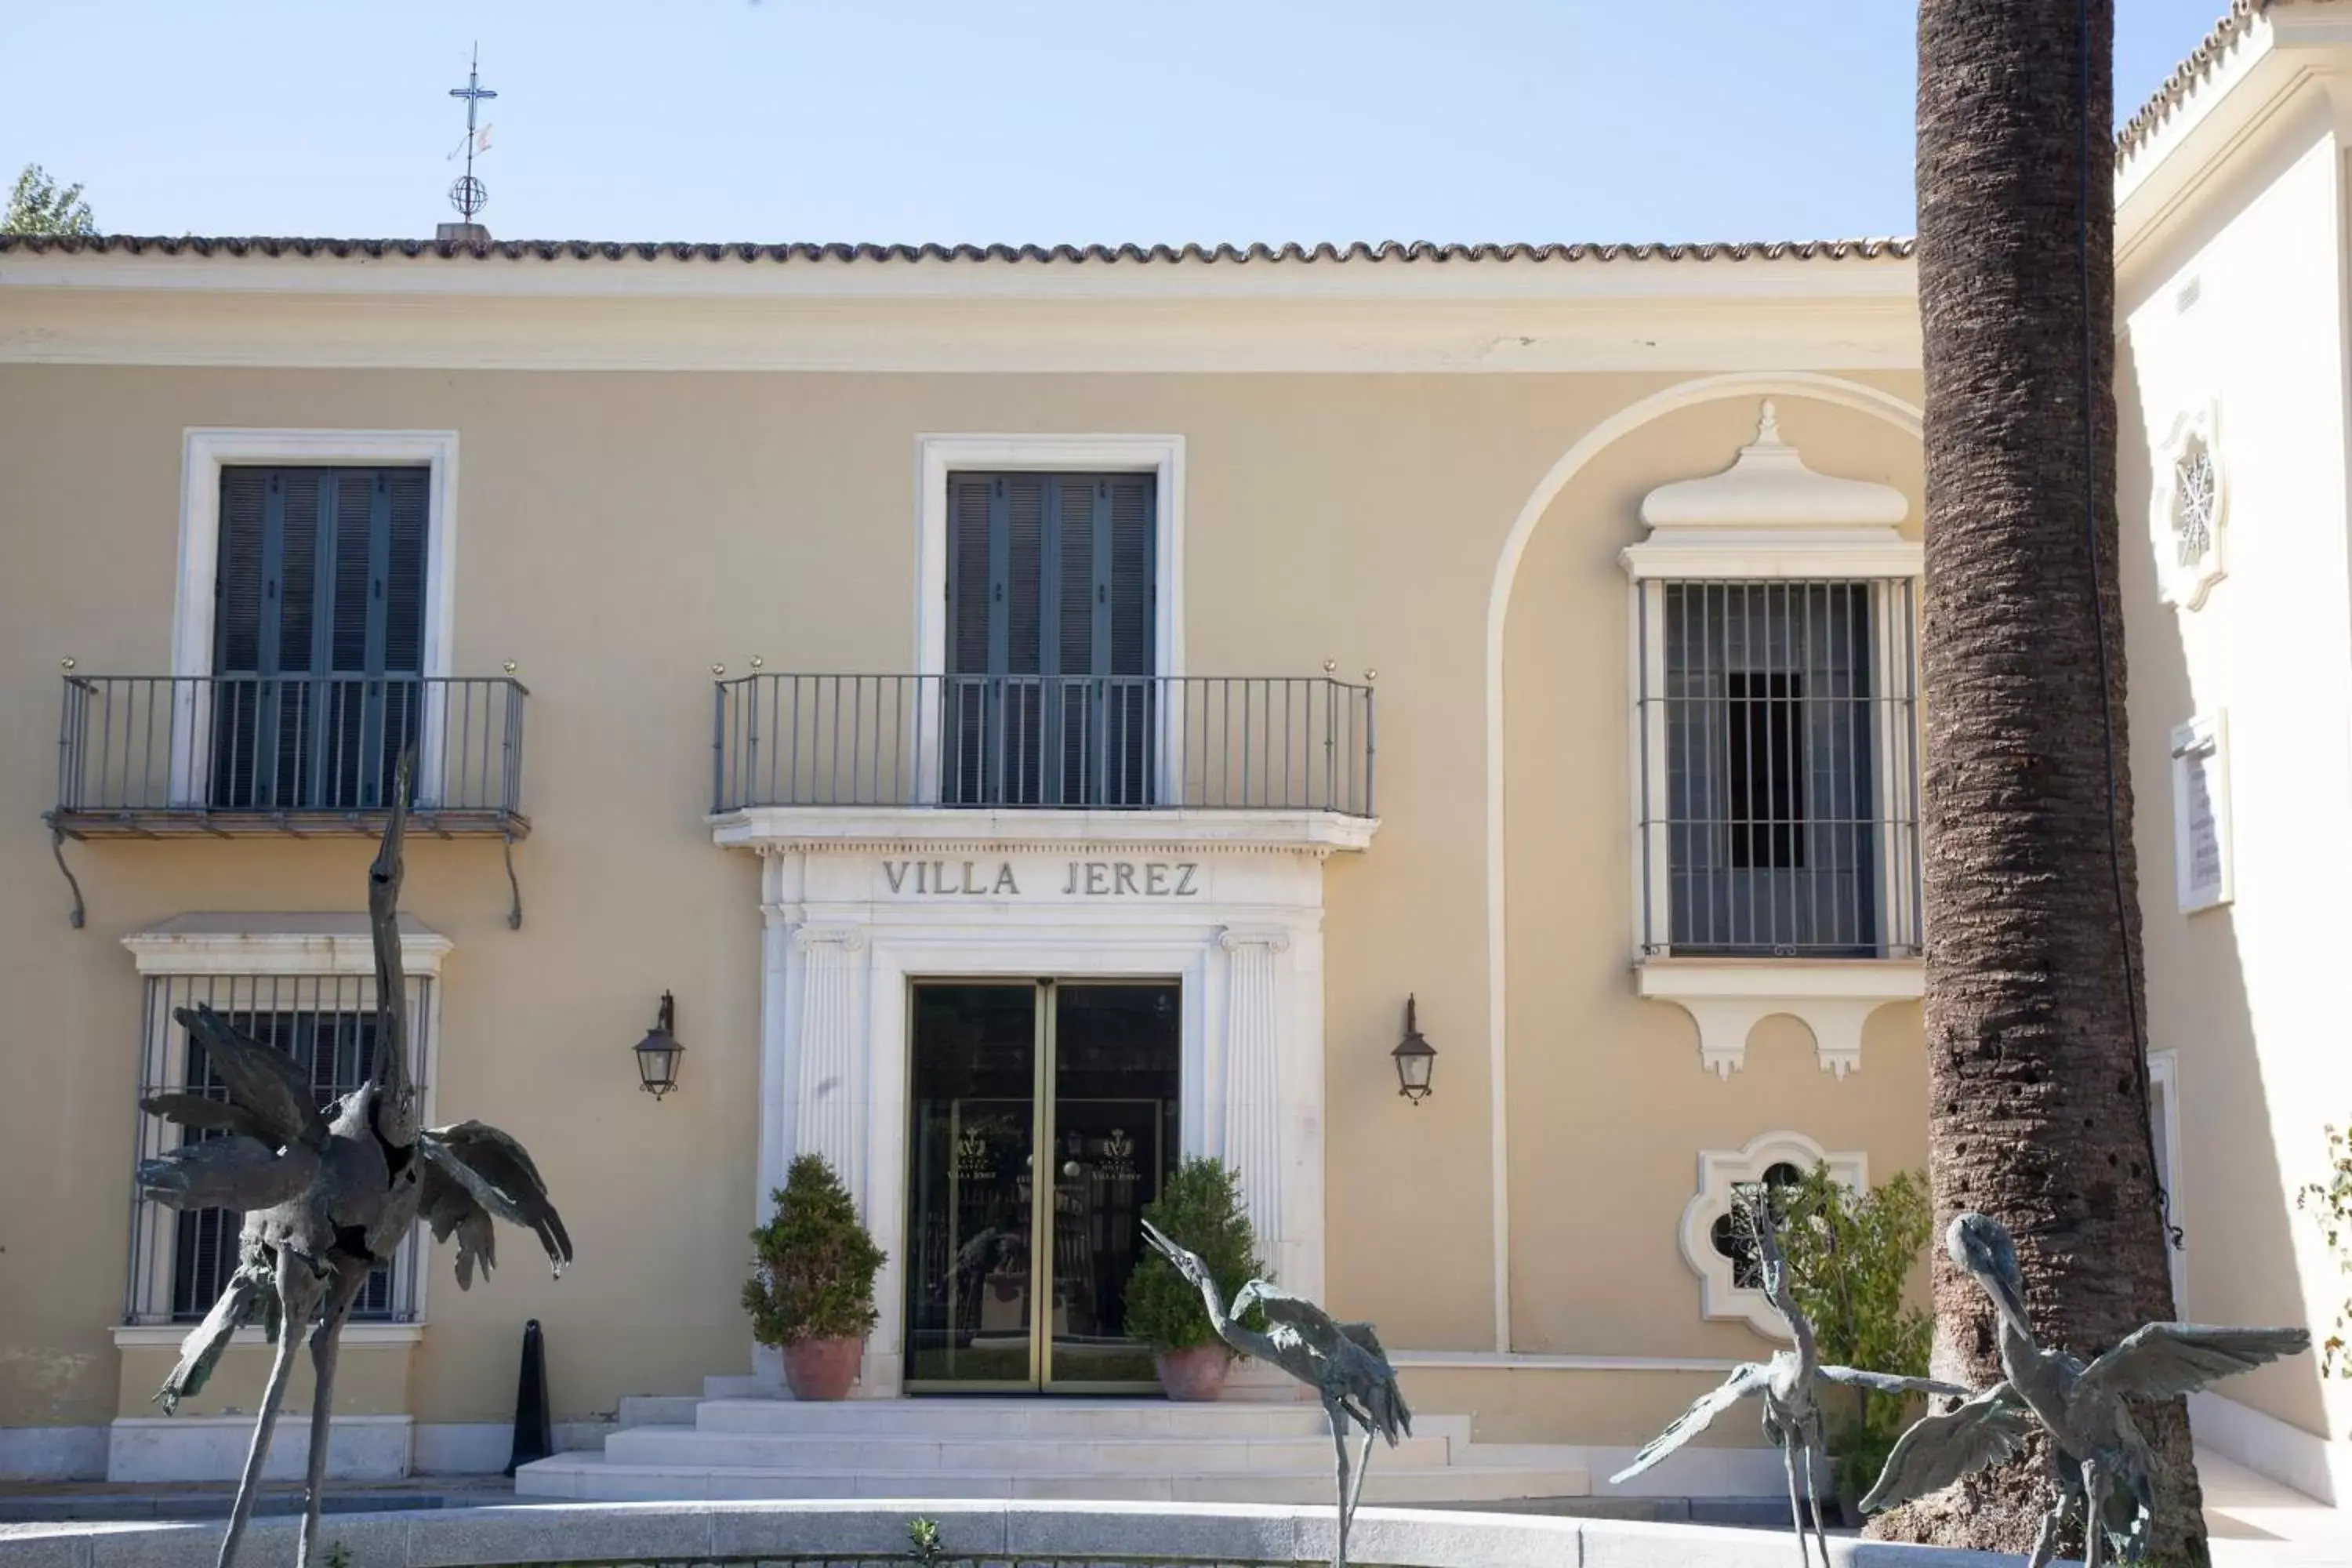 Facade/entrance, Property Building in Villa Jerez